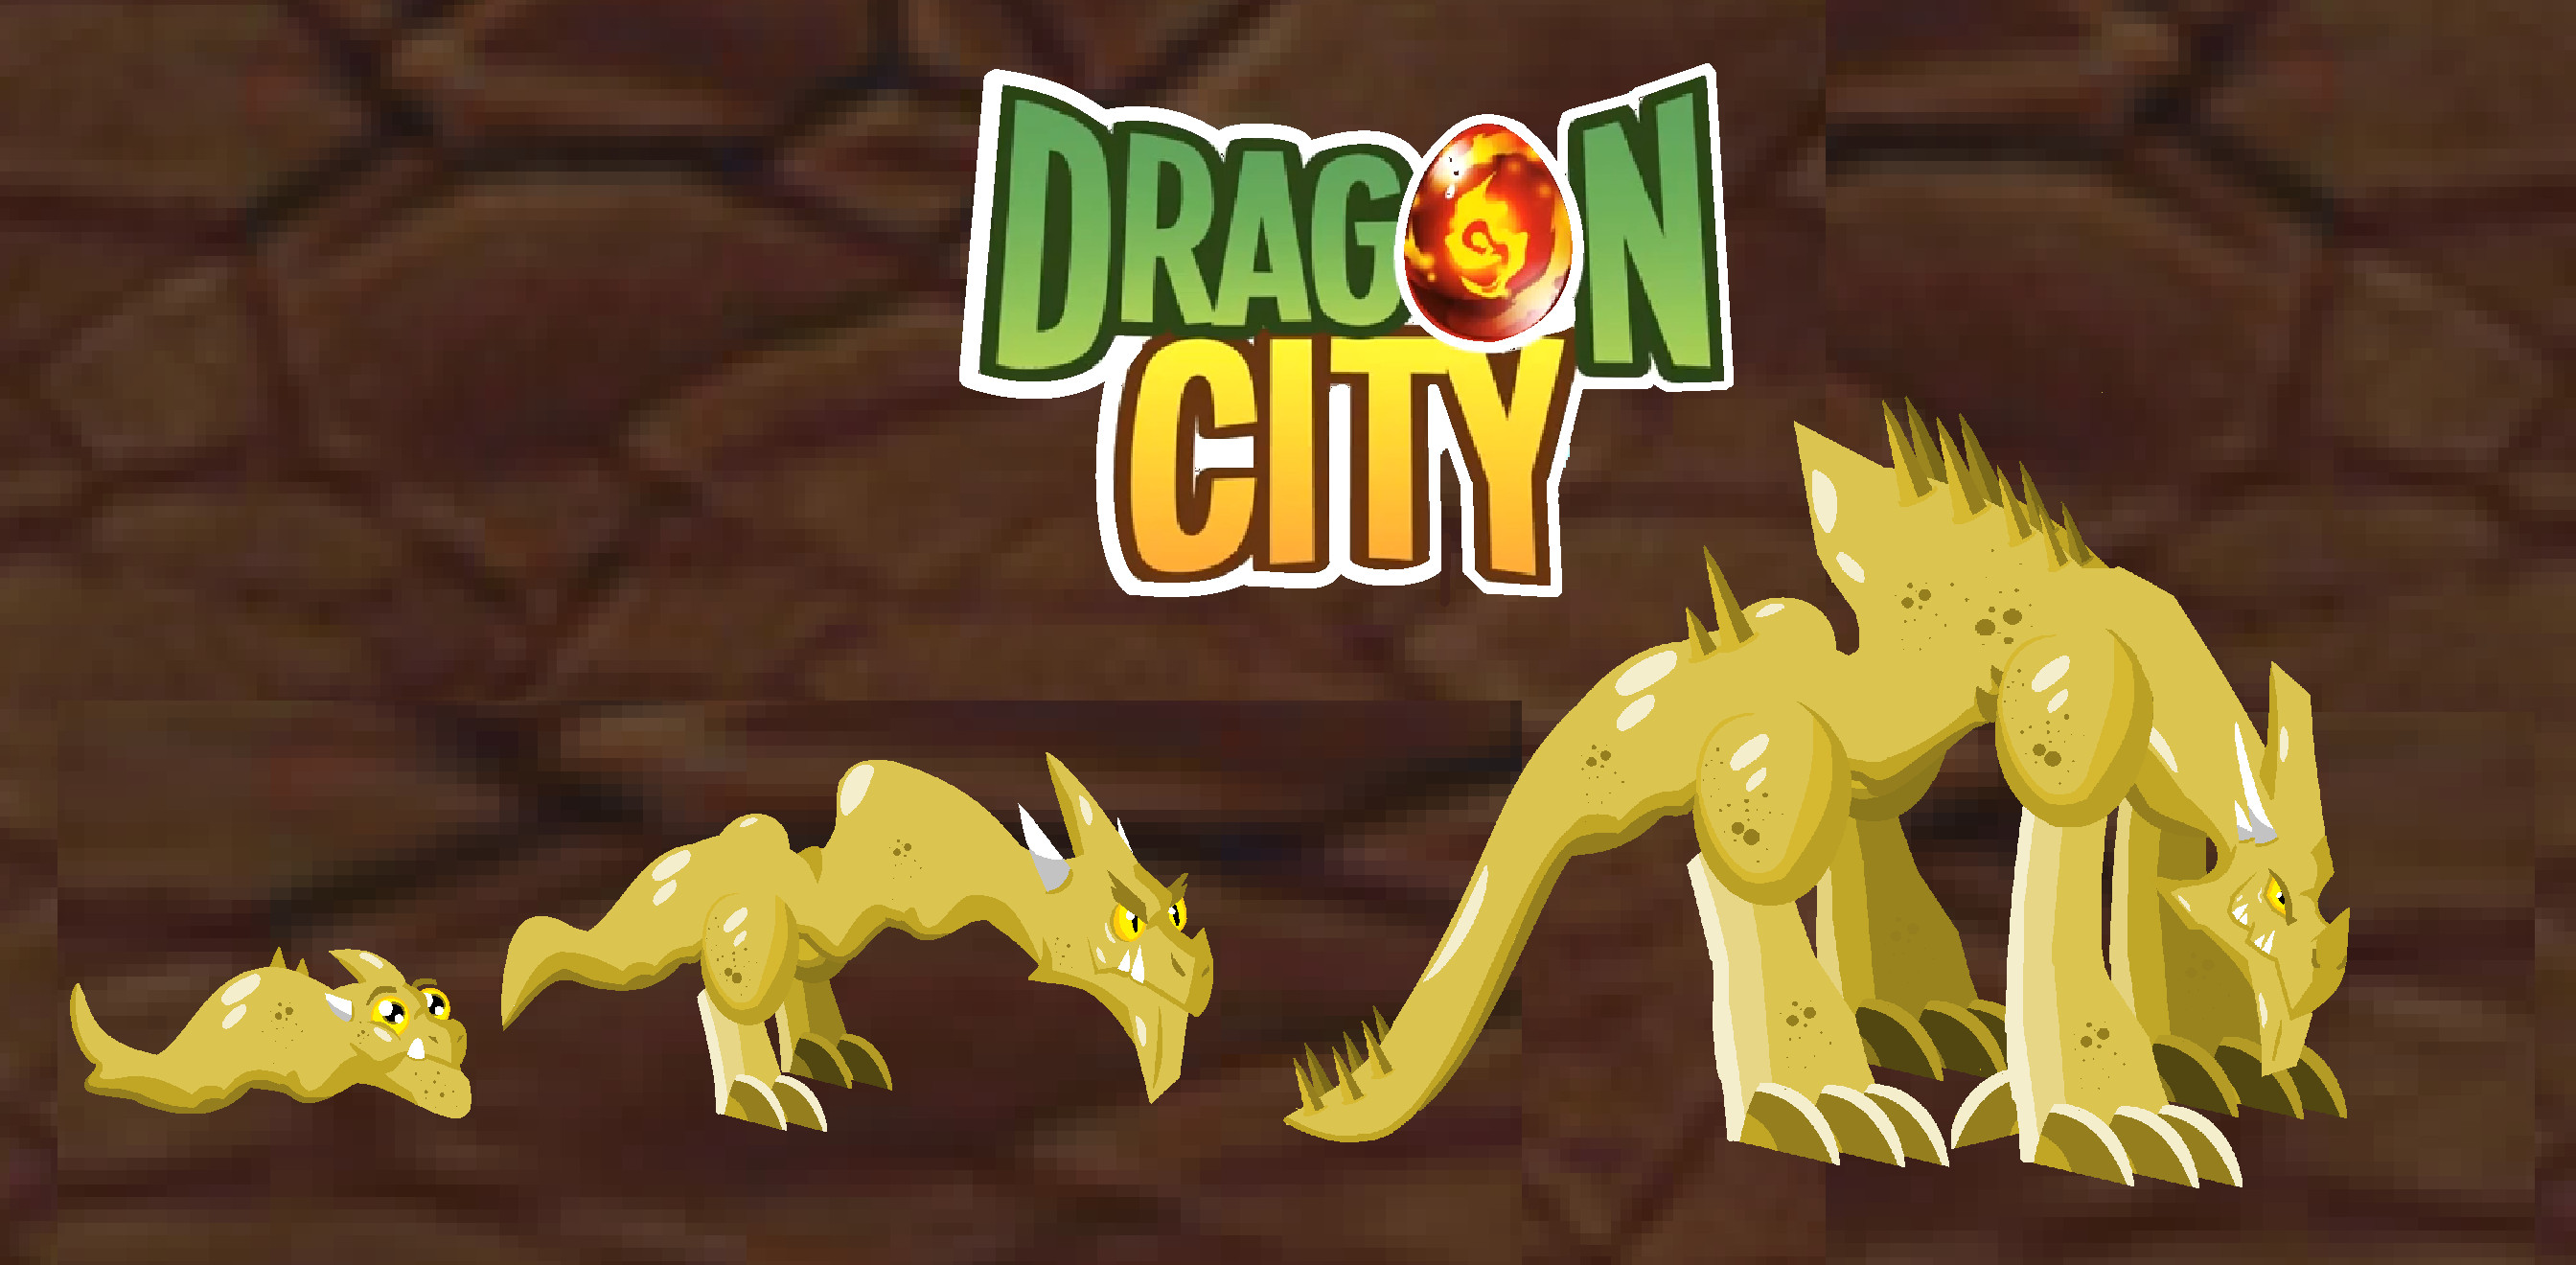 Dicas Dragon City